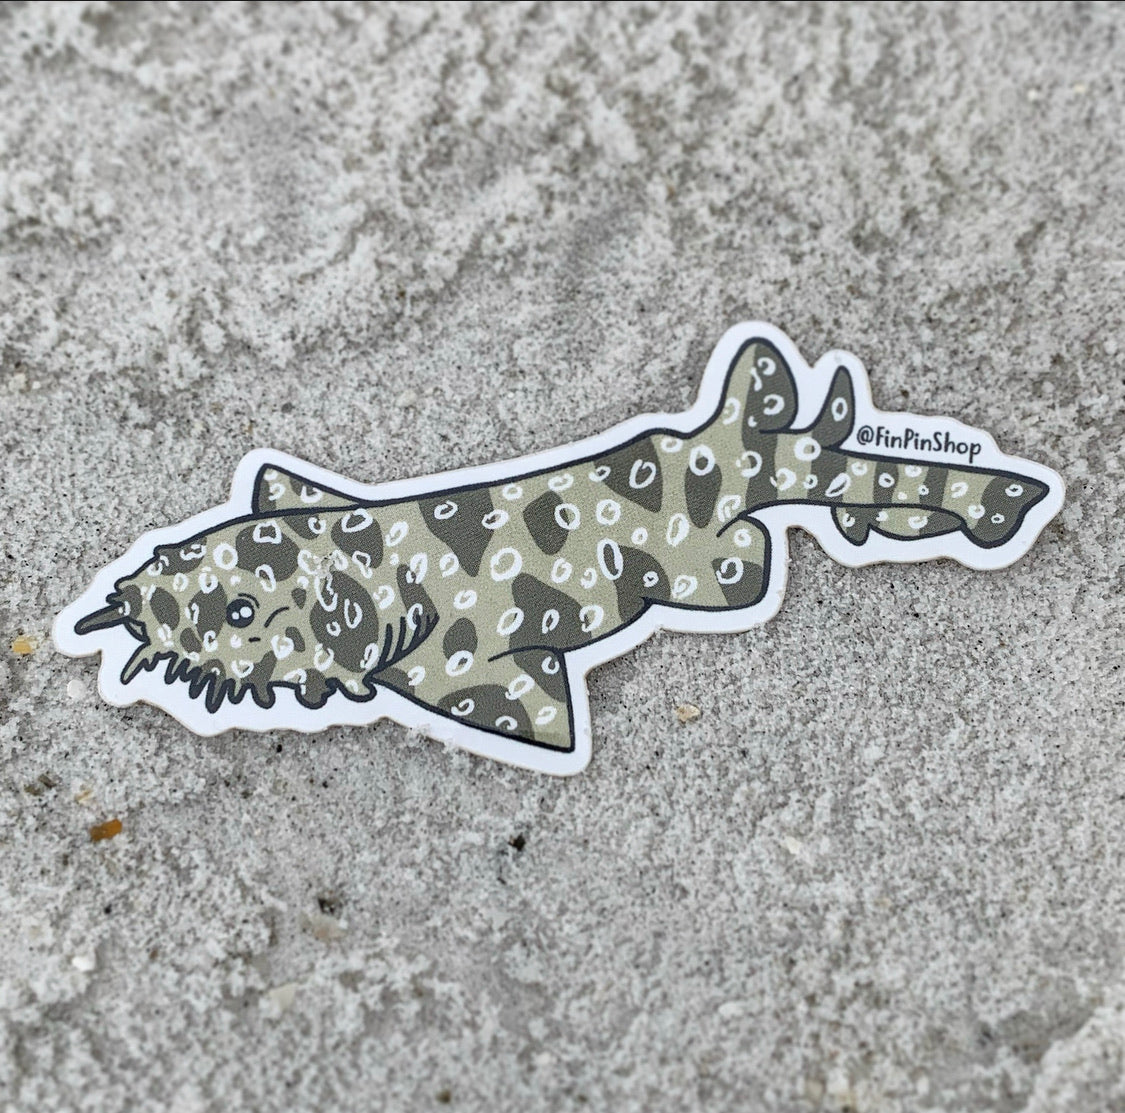 wobbegong shark sticker